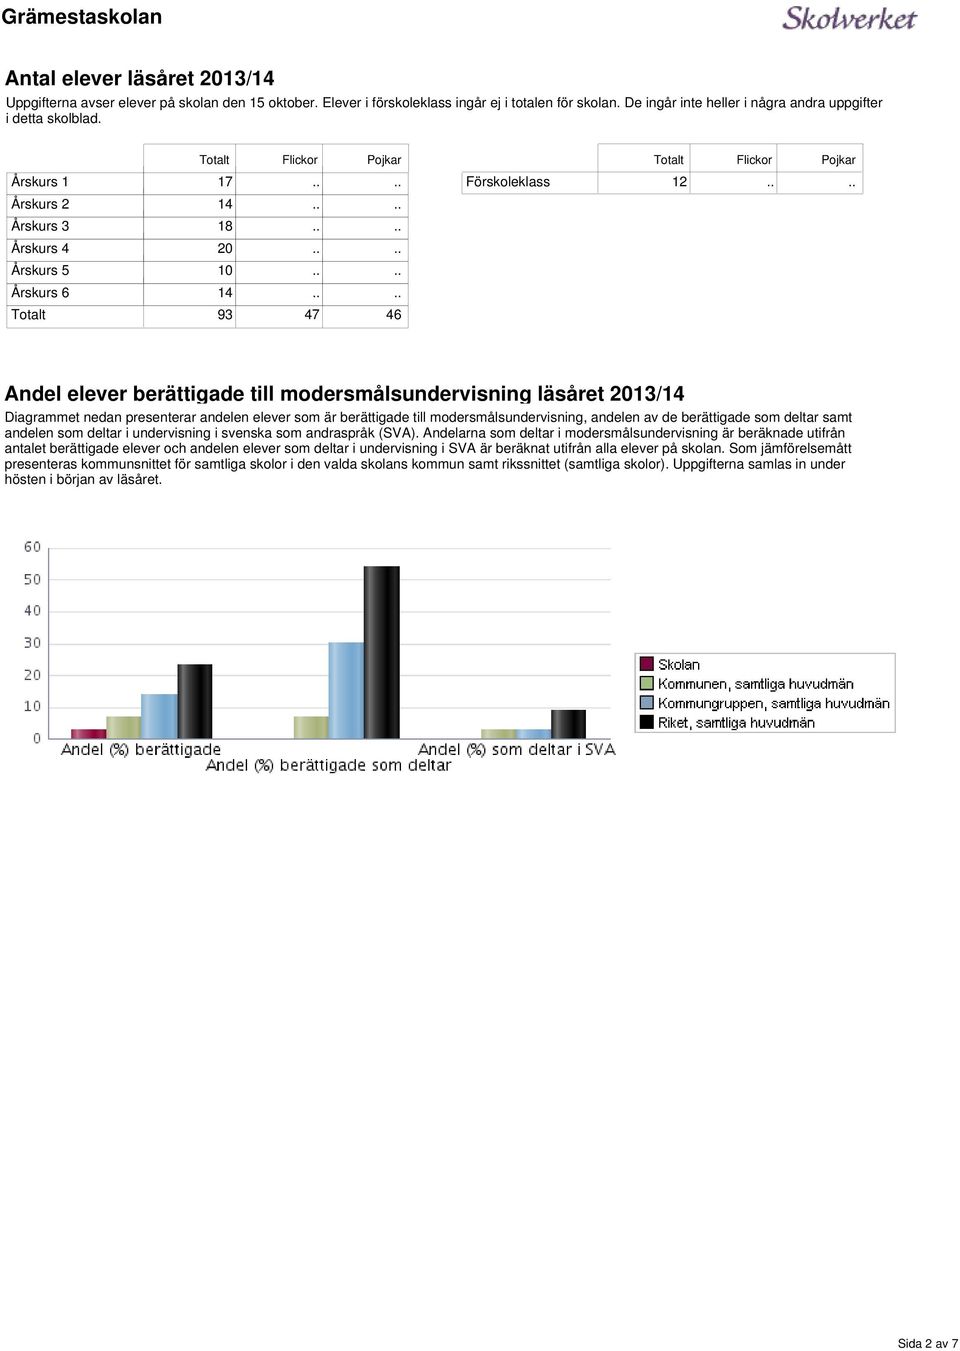 2013/14 Diagrammet nedan presenterar andelen som är berättigade till modersmålsundervisning, andelen av de berättigade som deltar samt andelen som deltar i undervisning i svenska som andraspråk (SVA).